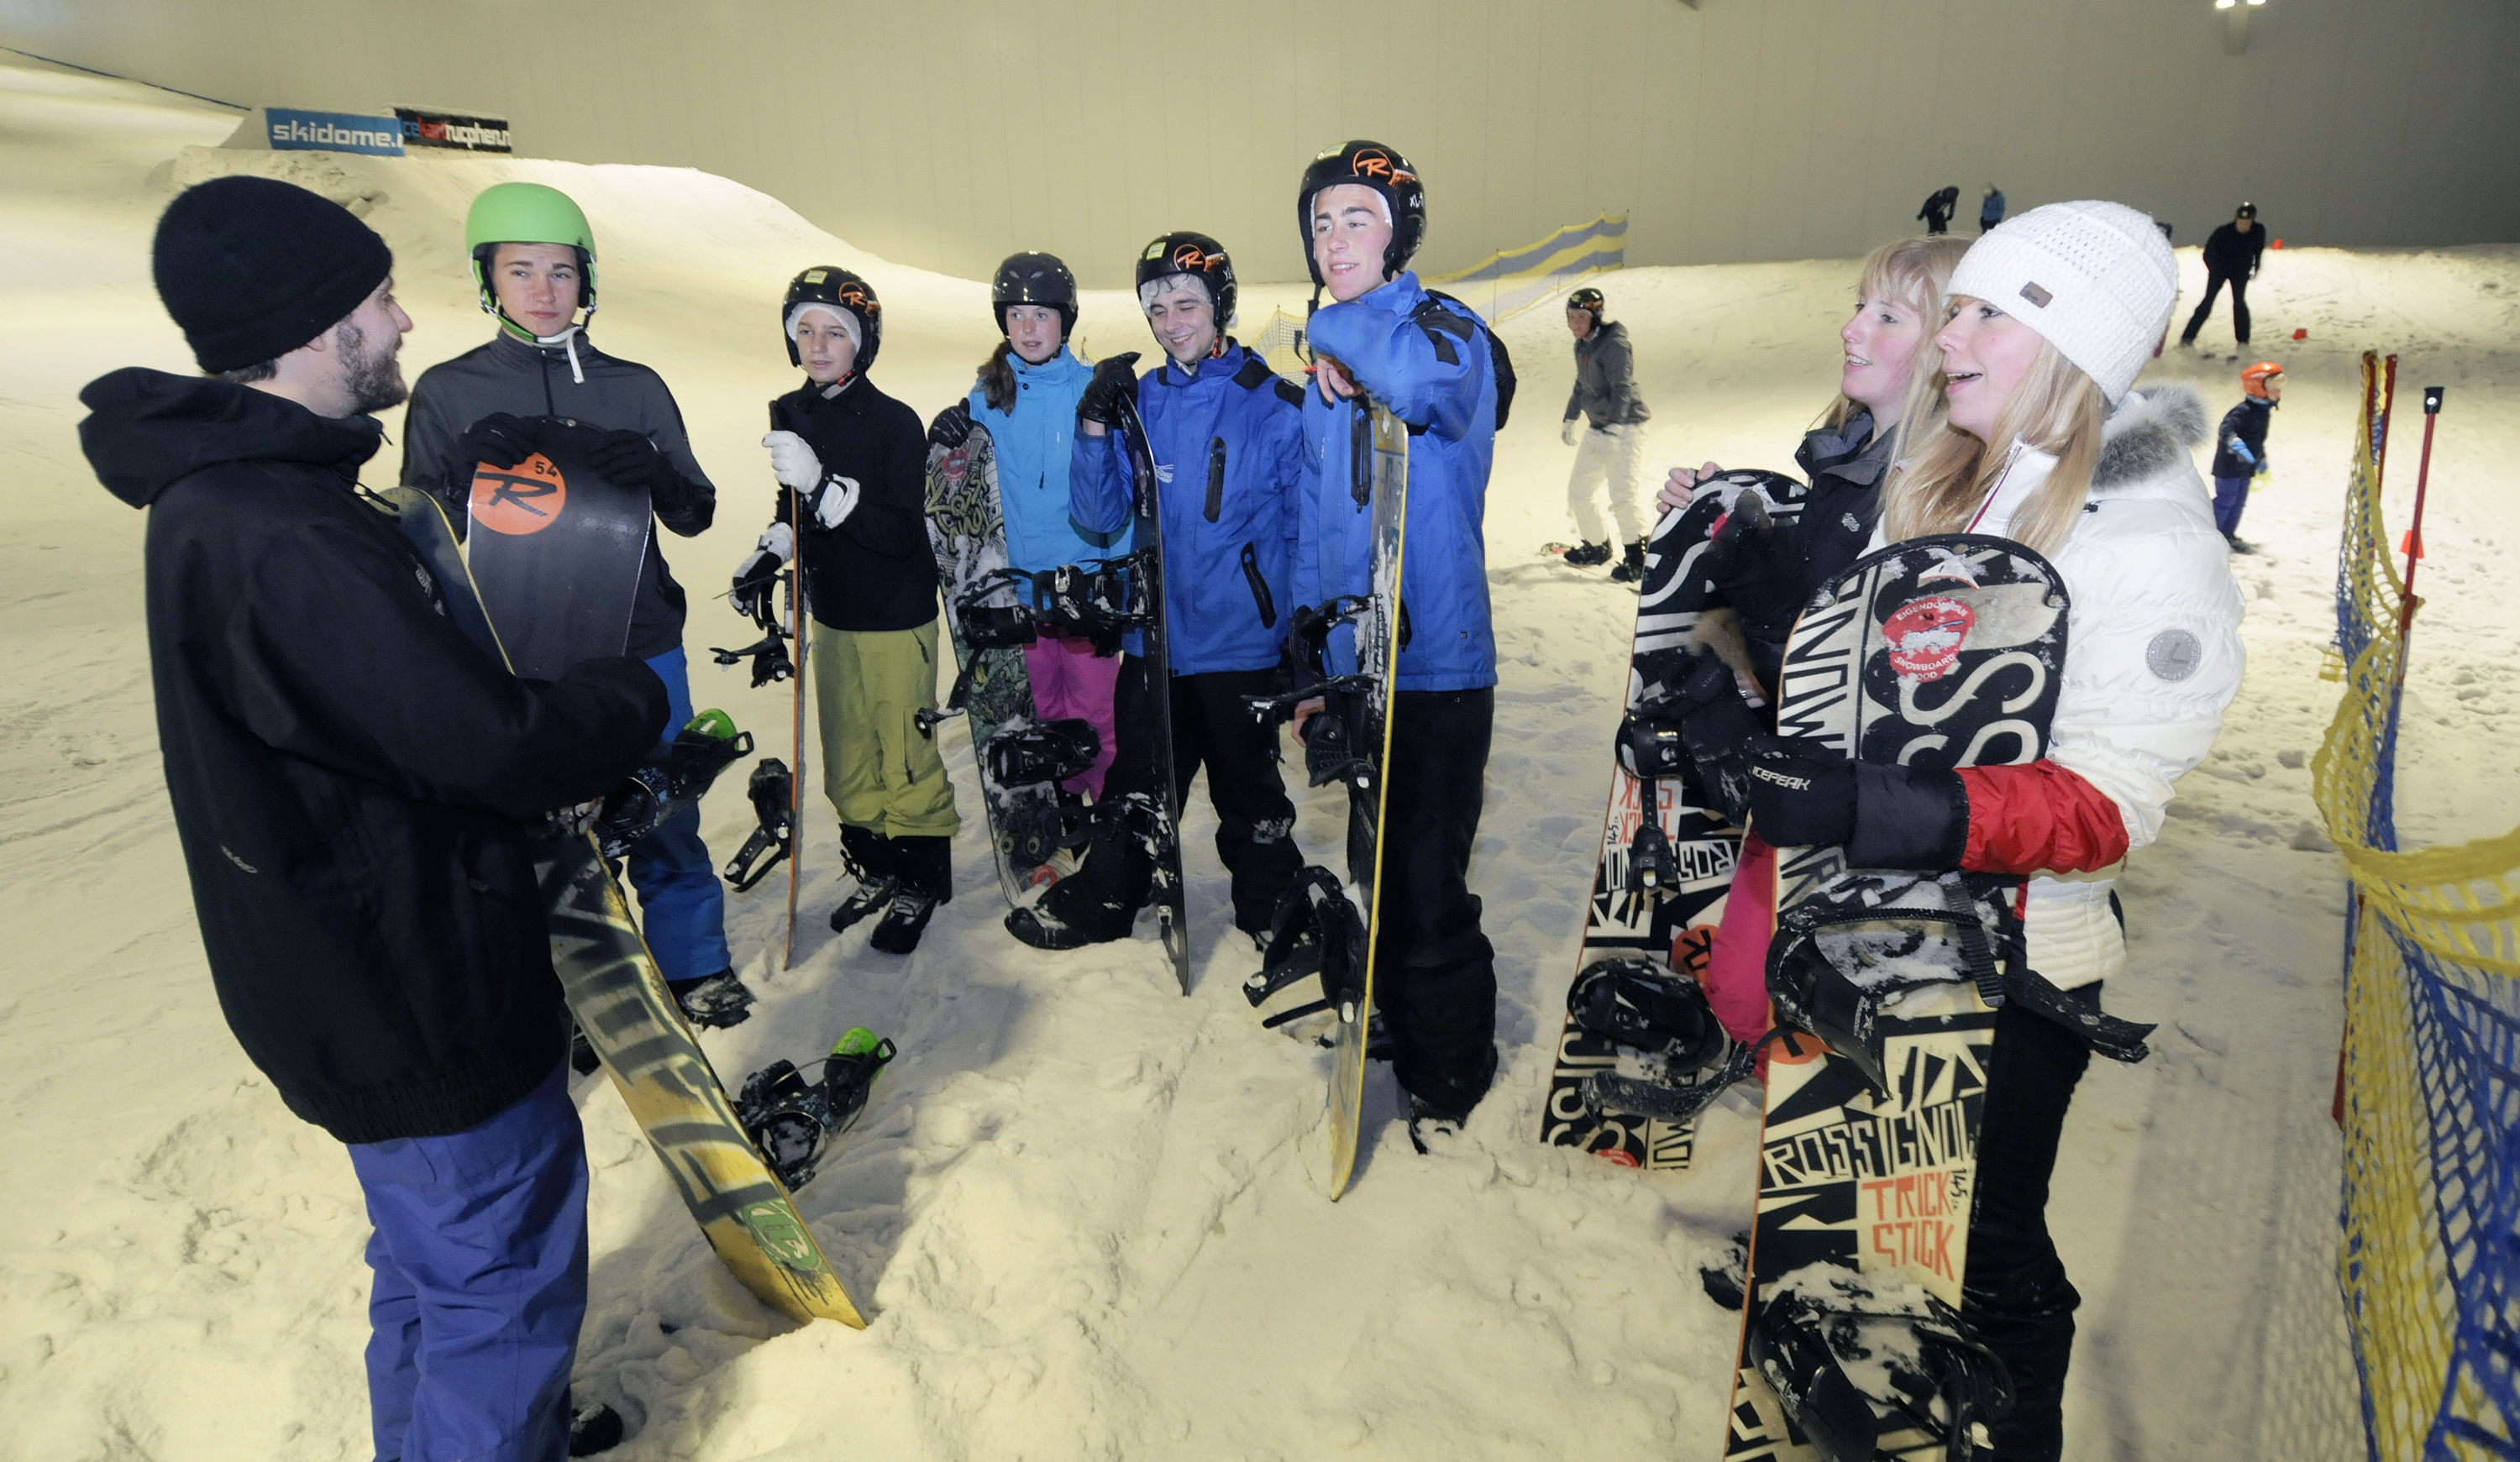 In Skidôme begint het wintersportseizoen nu